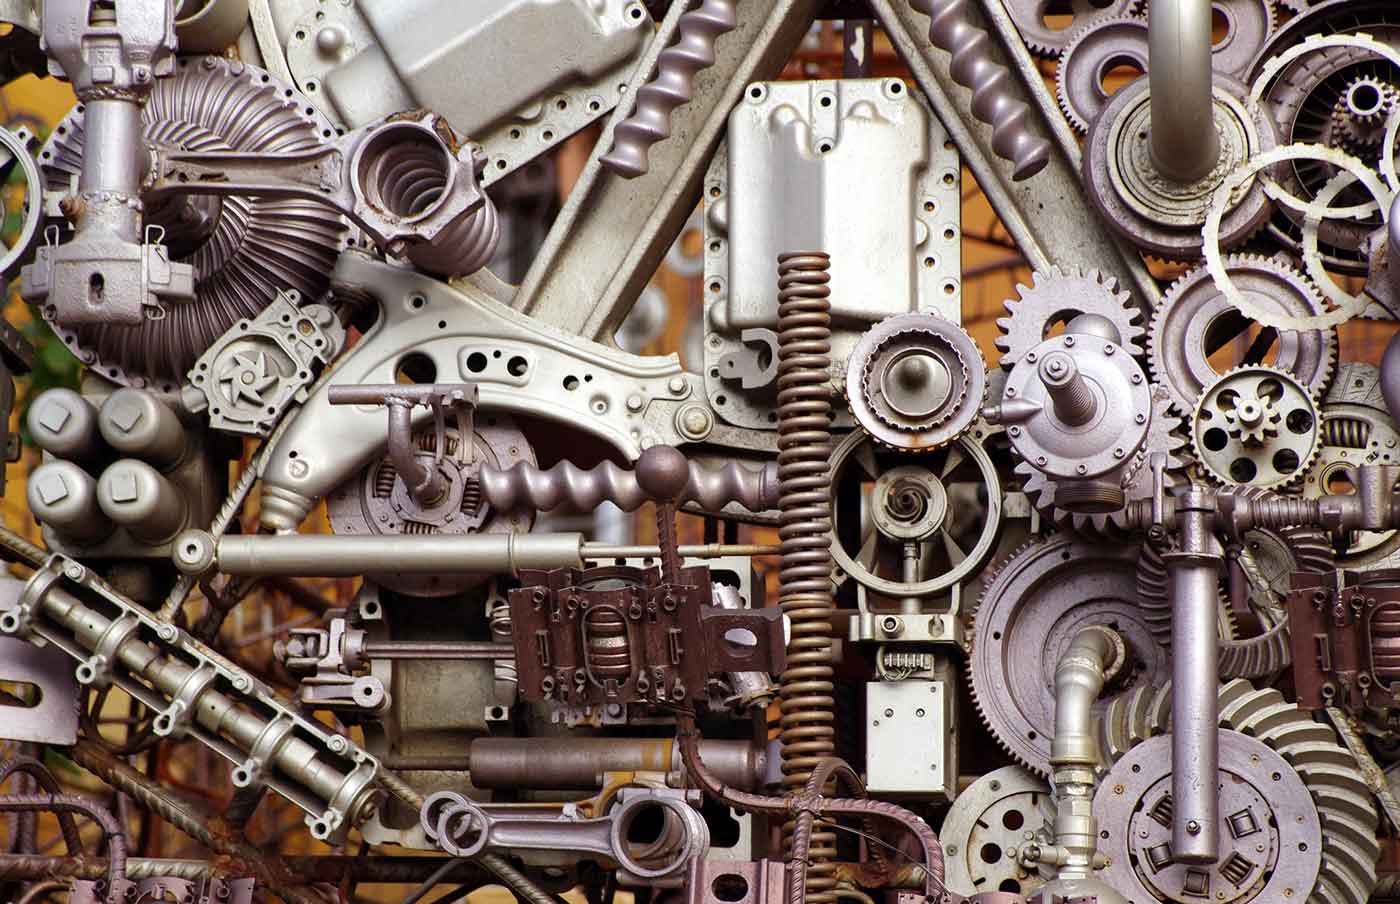 Intricate machinery